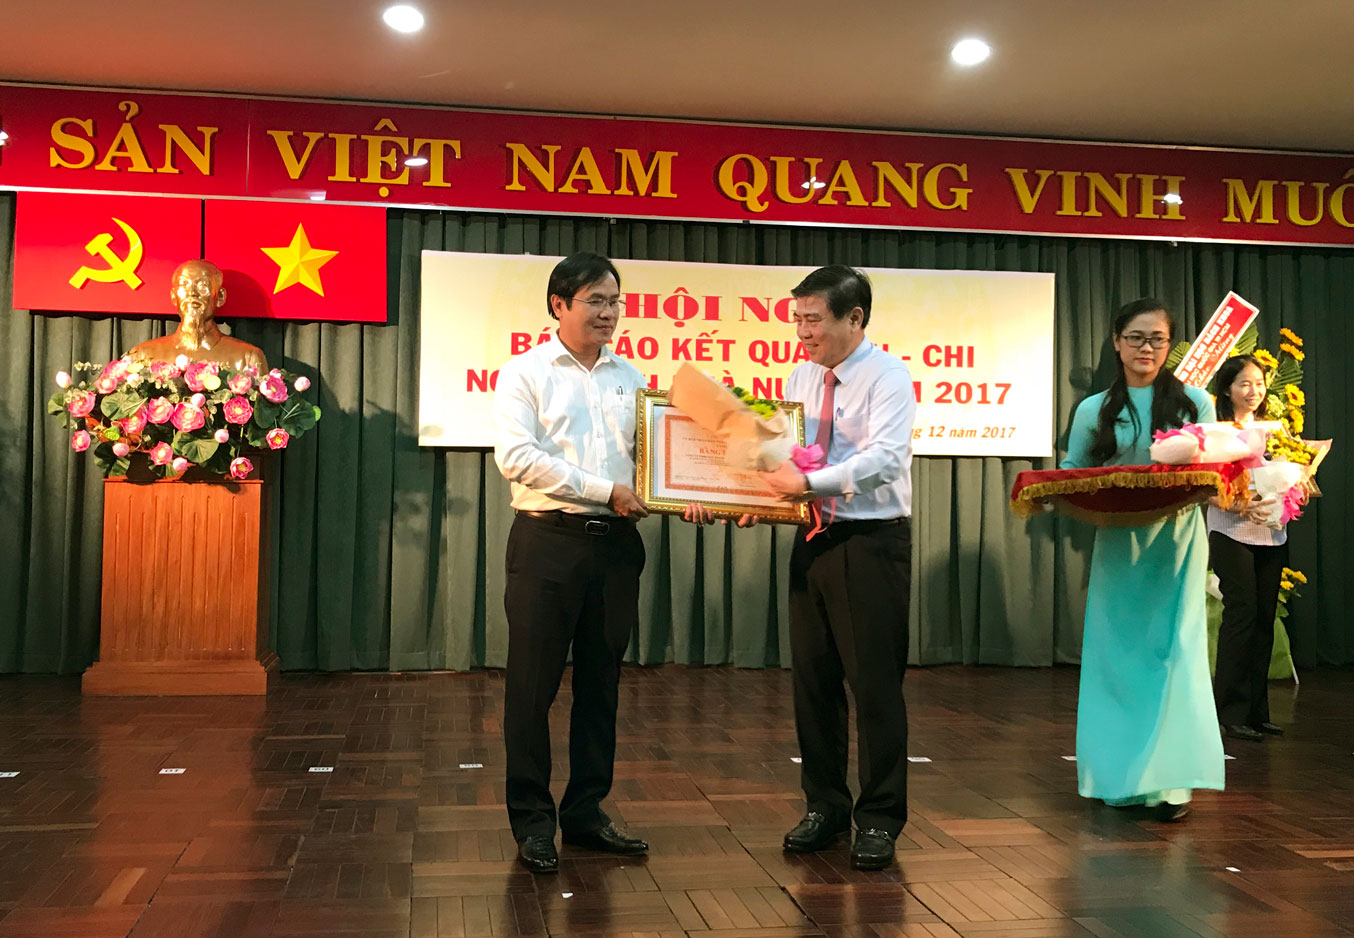 Ông Châu Tuấn - Giám đốc Công ty Thuốc lá Sài Gòn nhận bằng khen từ Ông Nguyễn Thành Phong - Chủ tịch UBND TPHCM